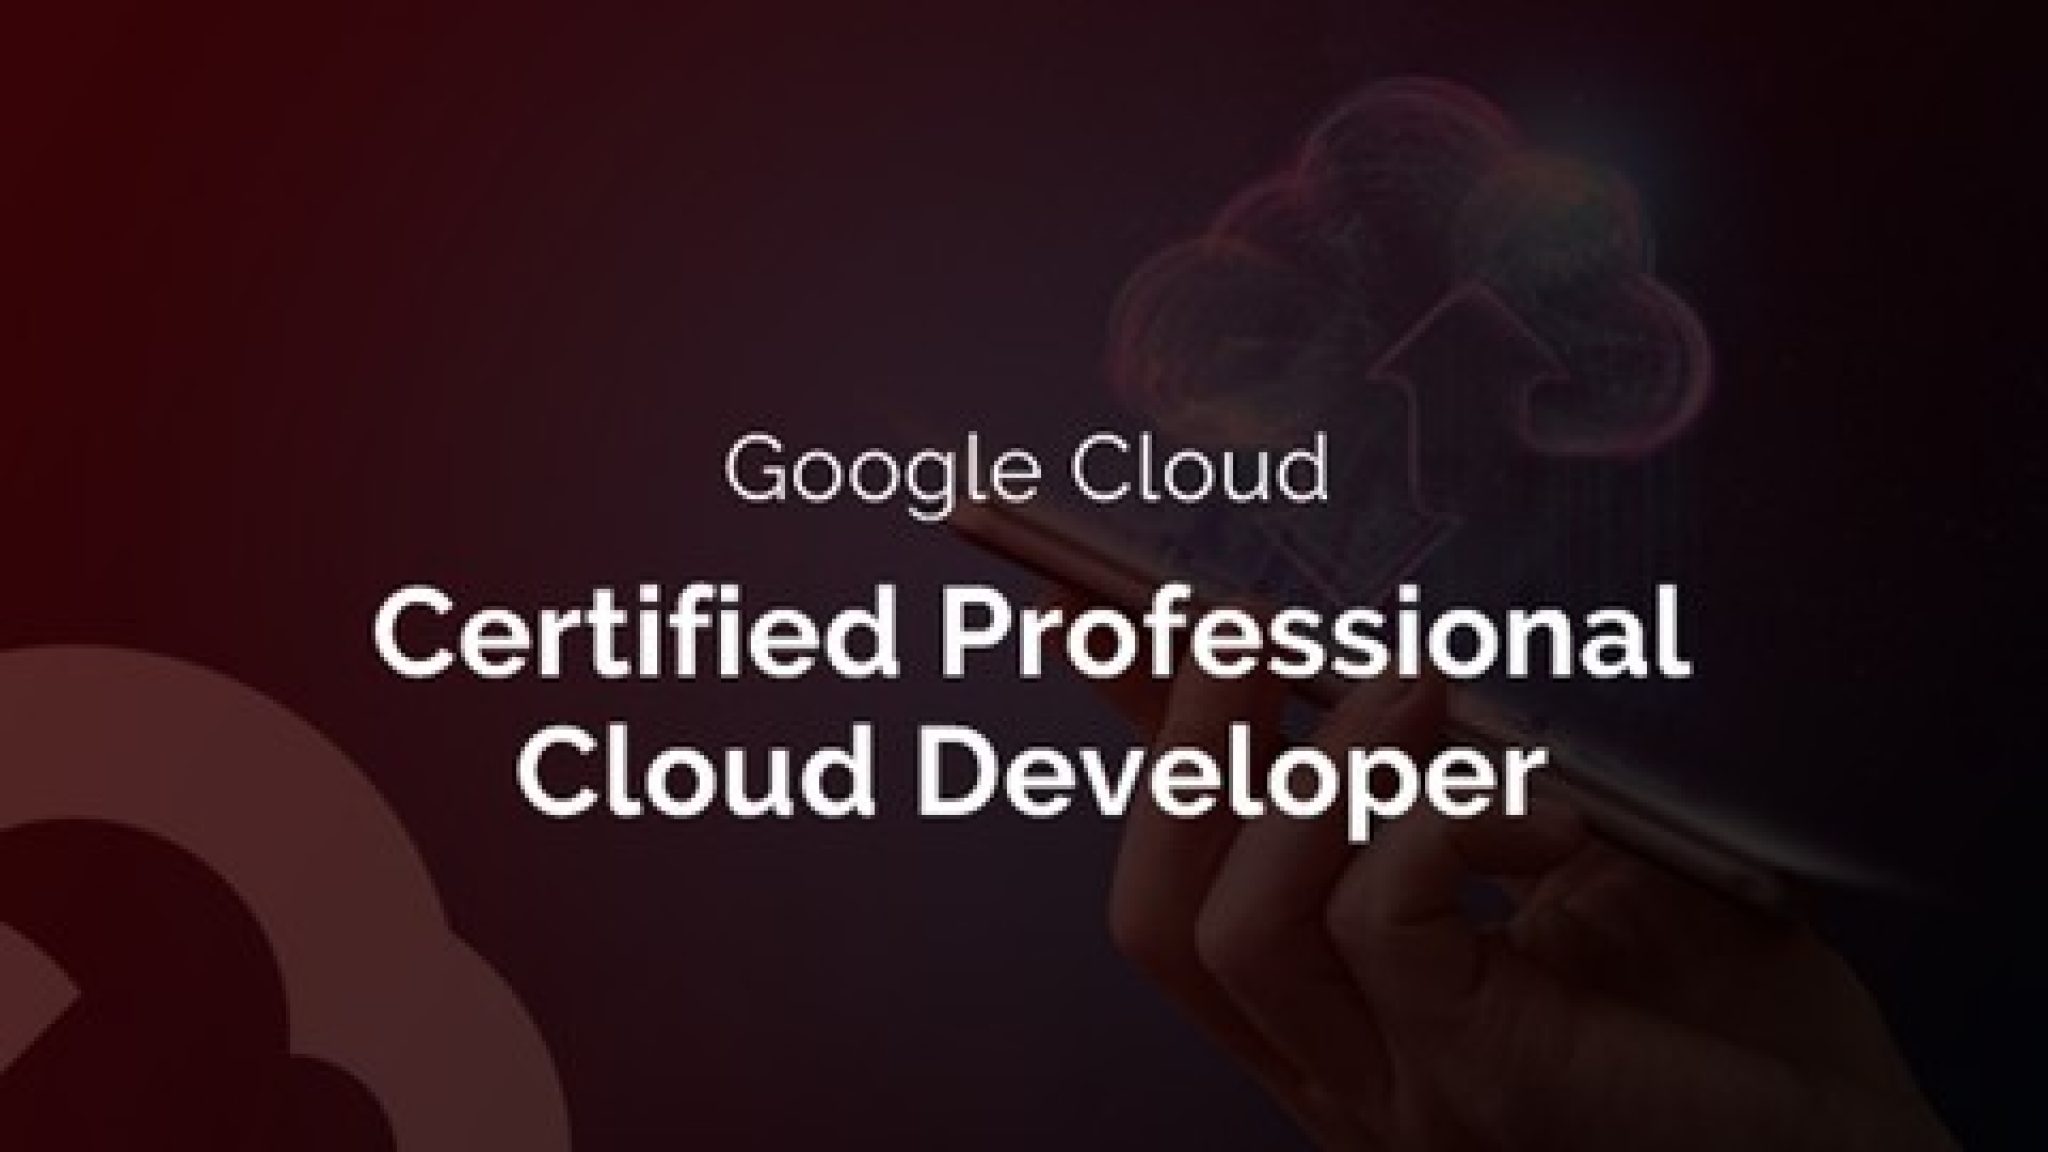 Professional-Cloud-Developer Fragen&Antworten